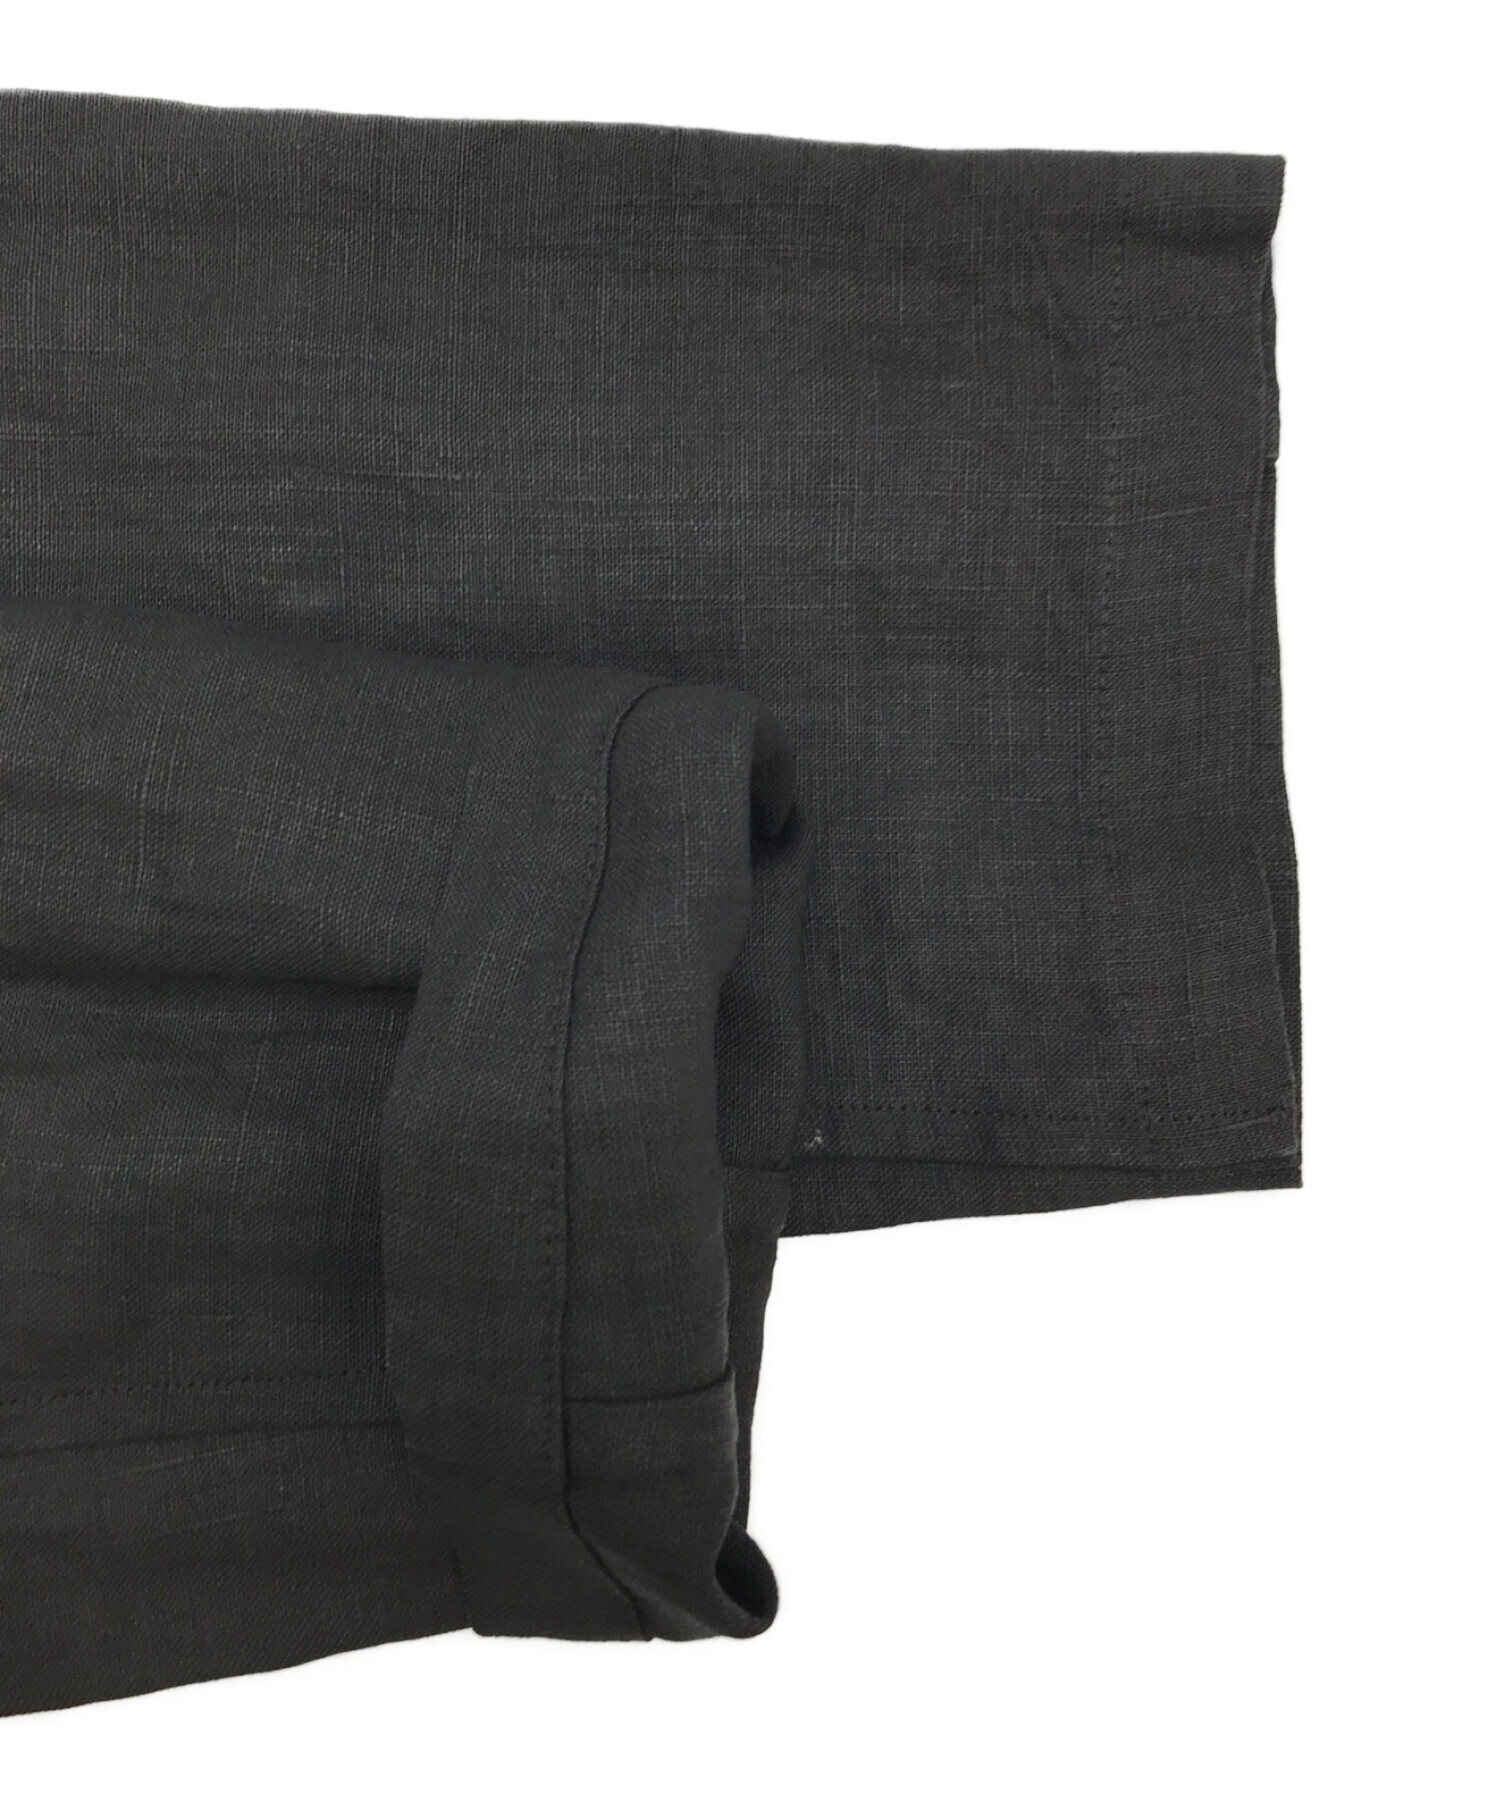 JURGEN LEHL (ヨーガンレール) チャイナリネンシャツ ブラック サイズ:表記なし